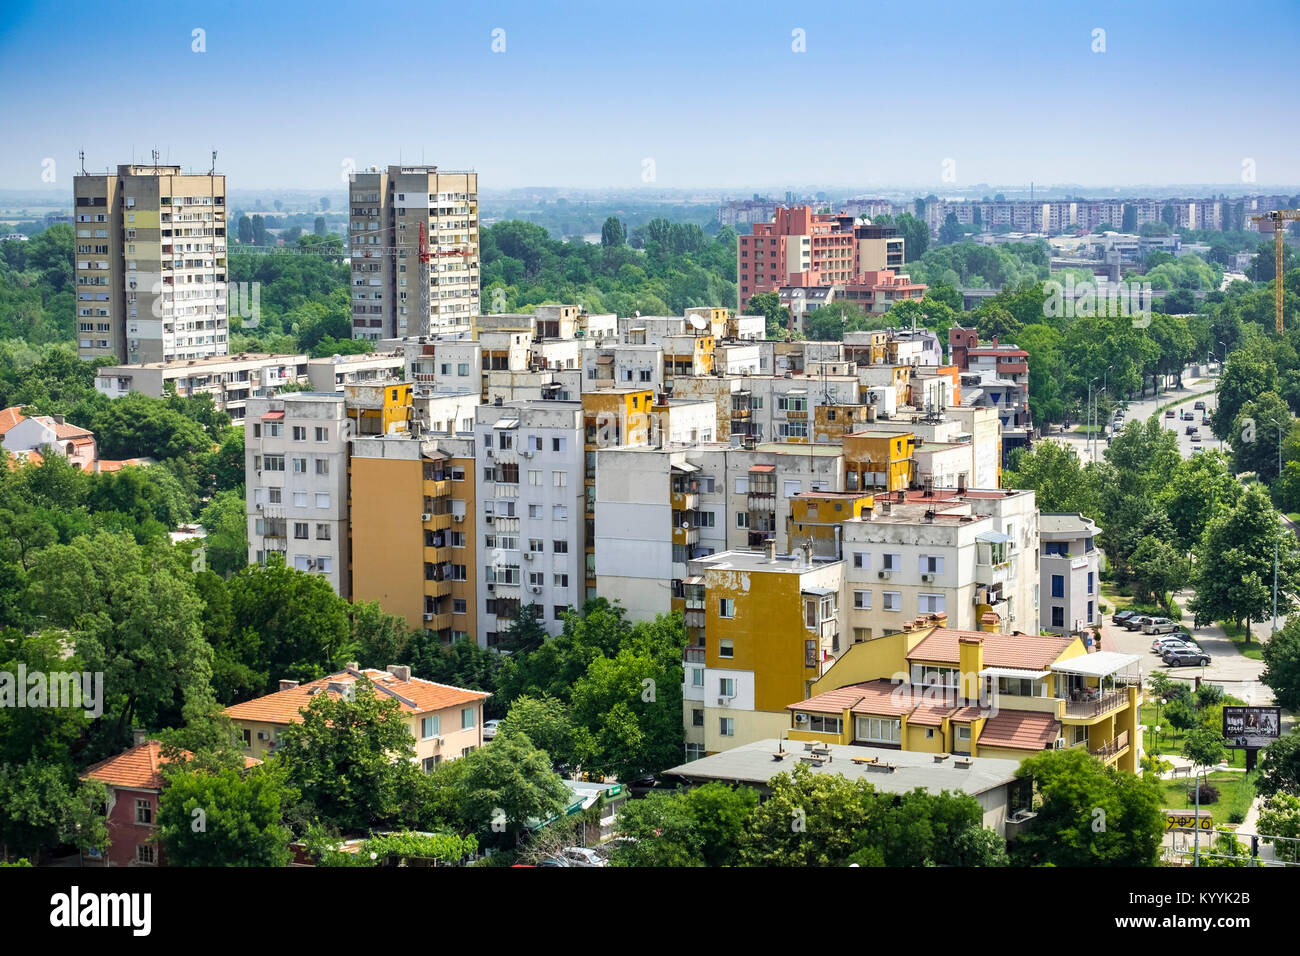 Erhöhte aufgrund der hohen Dichte der kommunistischen Ära Gehäuse Apartment Blocks und Gebäude in der Stadt von Plovdiv, Bulgarien, Europa Stockfoto